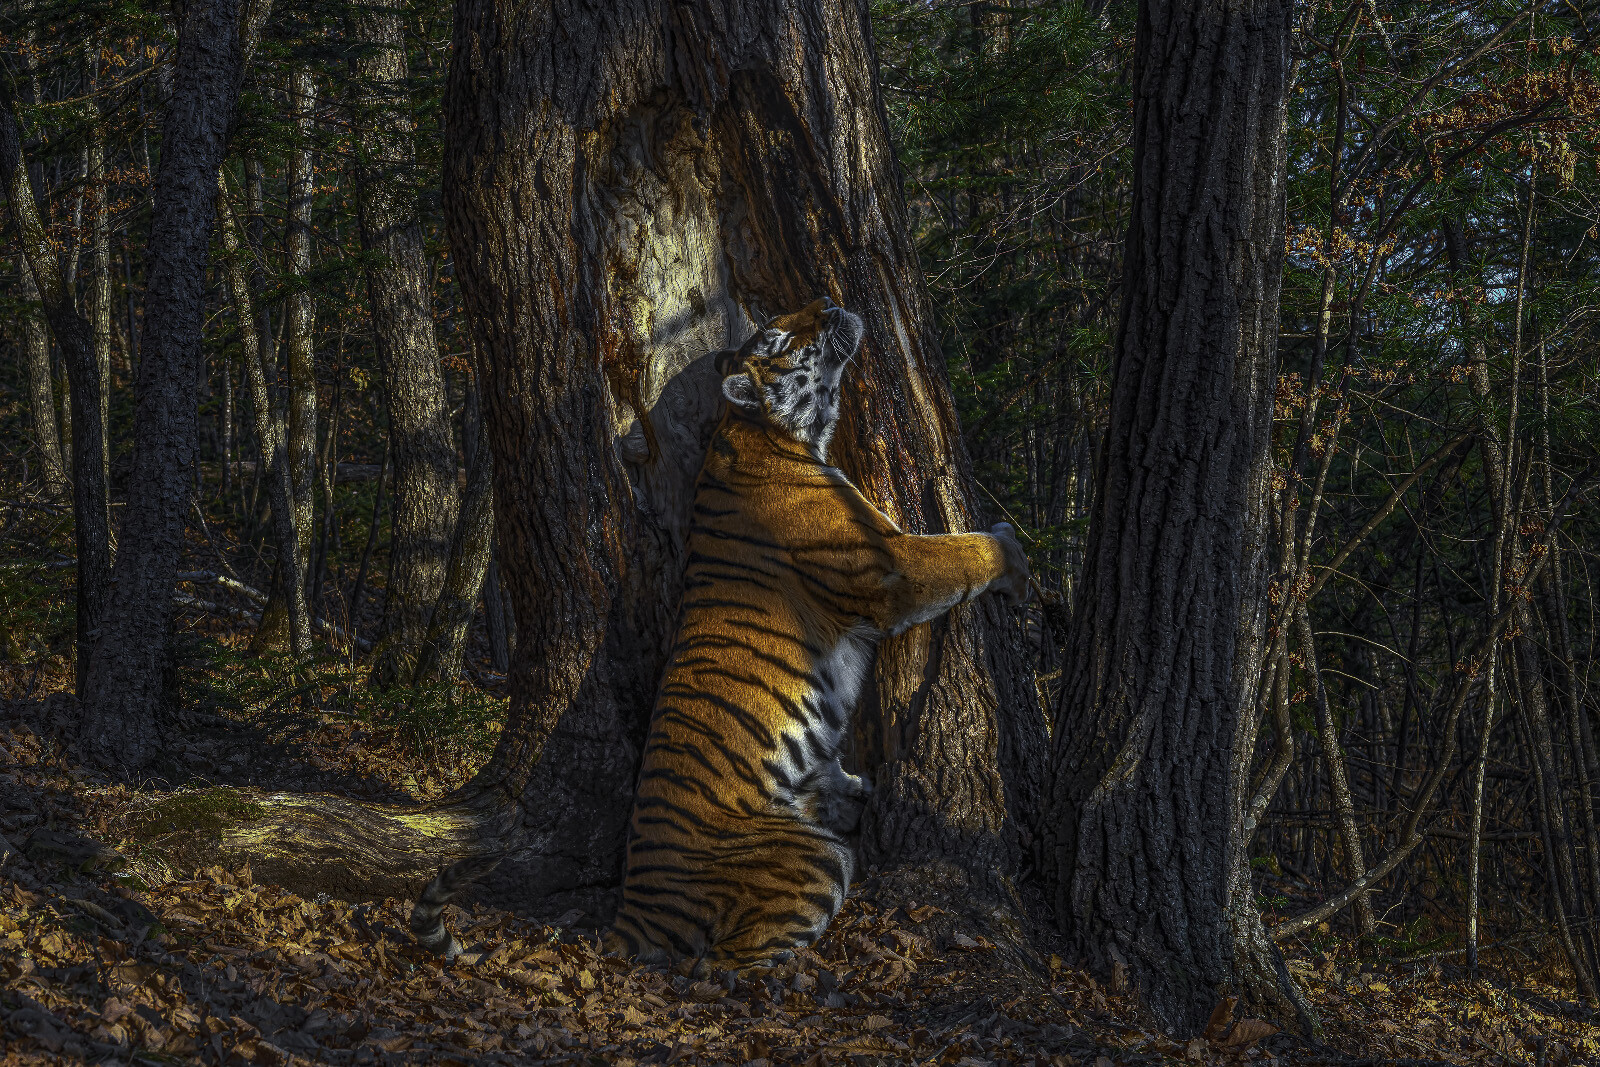 Una toma única de una tigresa siberiana abrazando un árbol gana el concurso de naturaleza Wildlife Photographer of the Year 2020